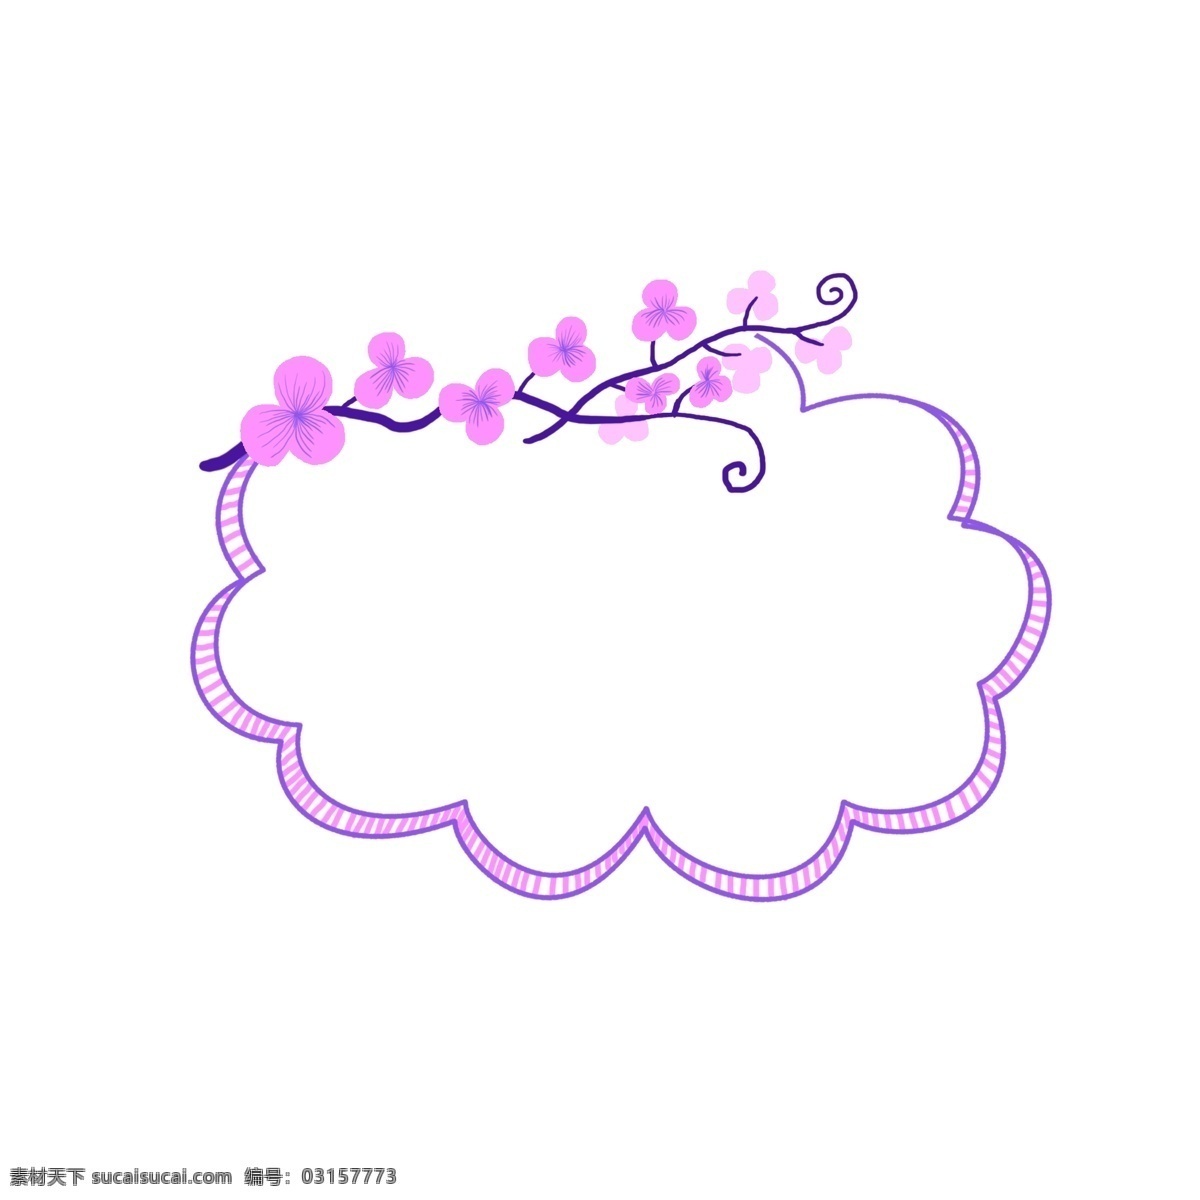 粉色 边框 手绘 装饰 粉色边框 粉色花朵 花朵边框 手绘边框